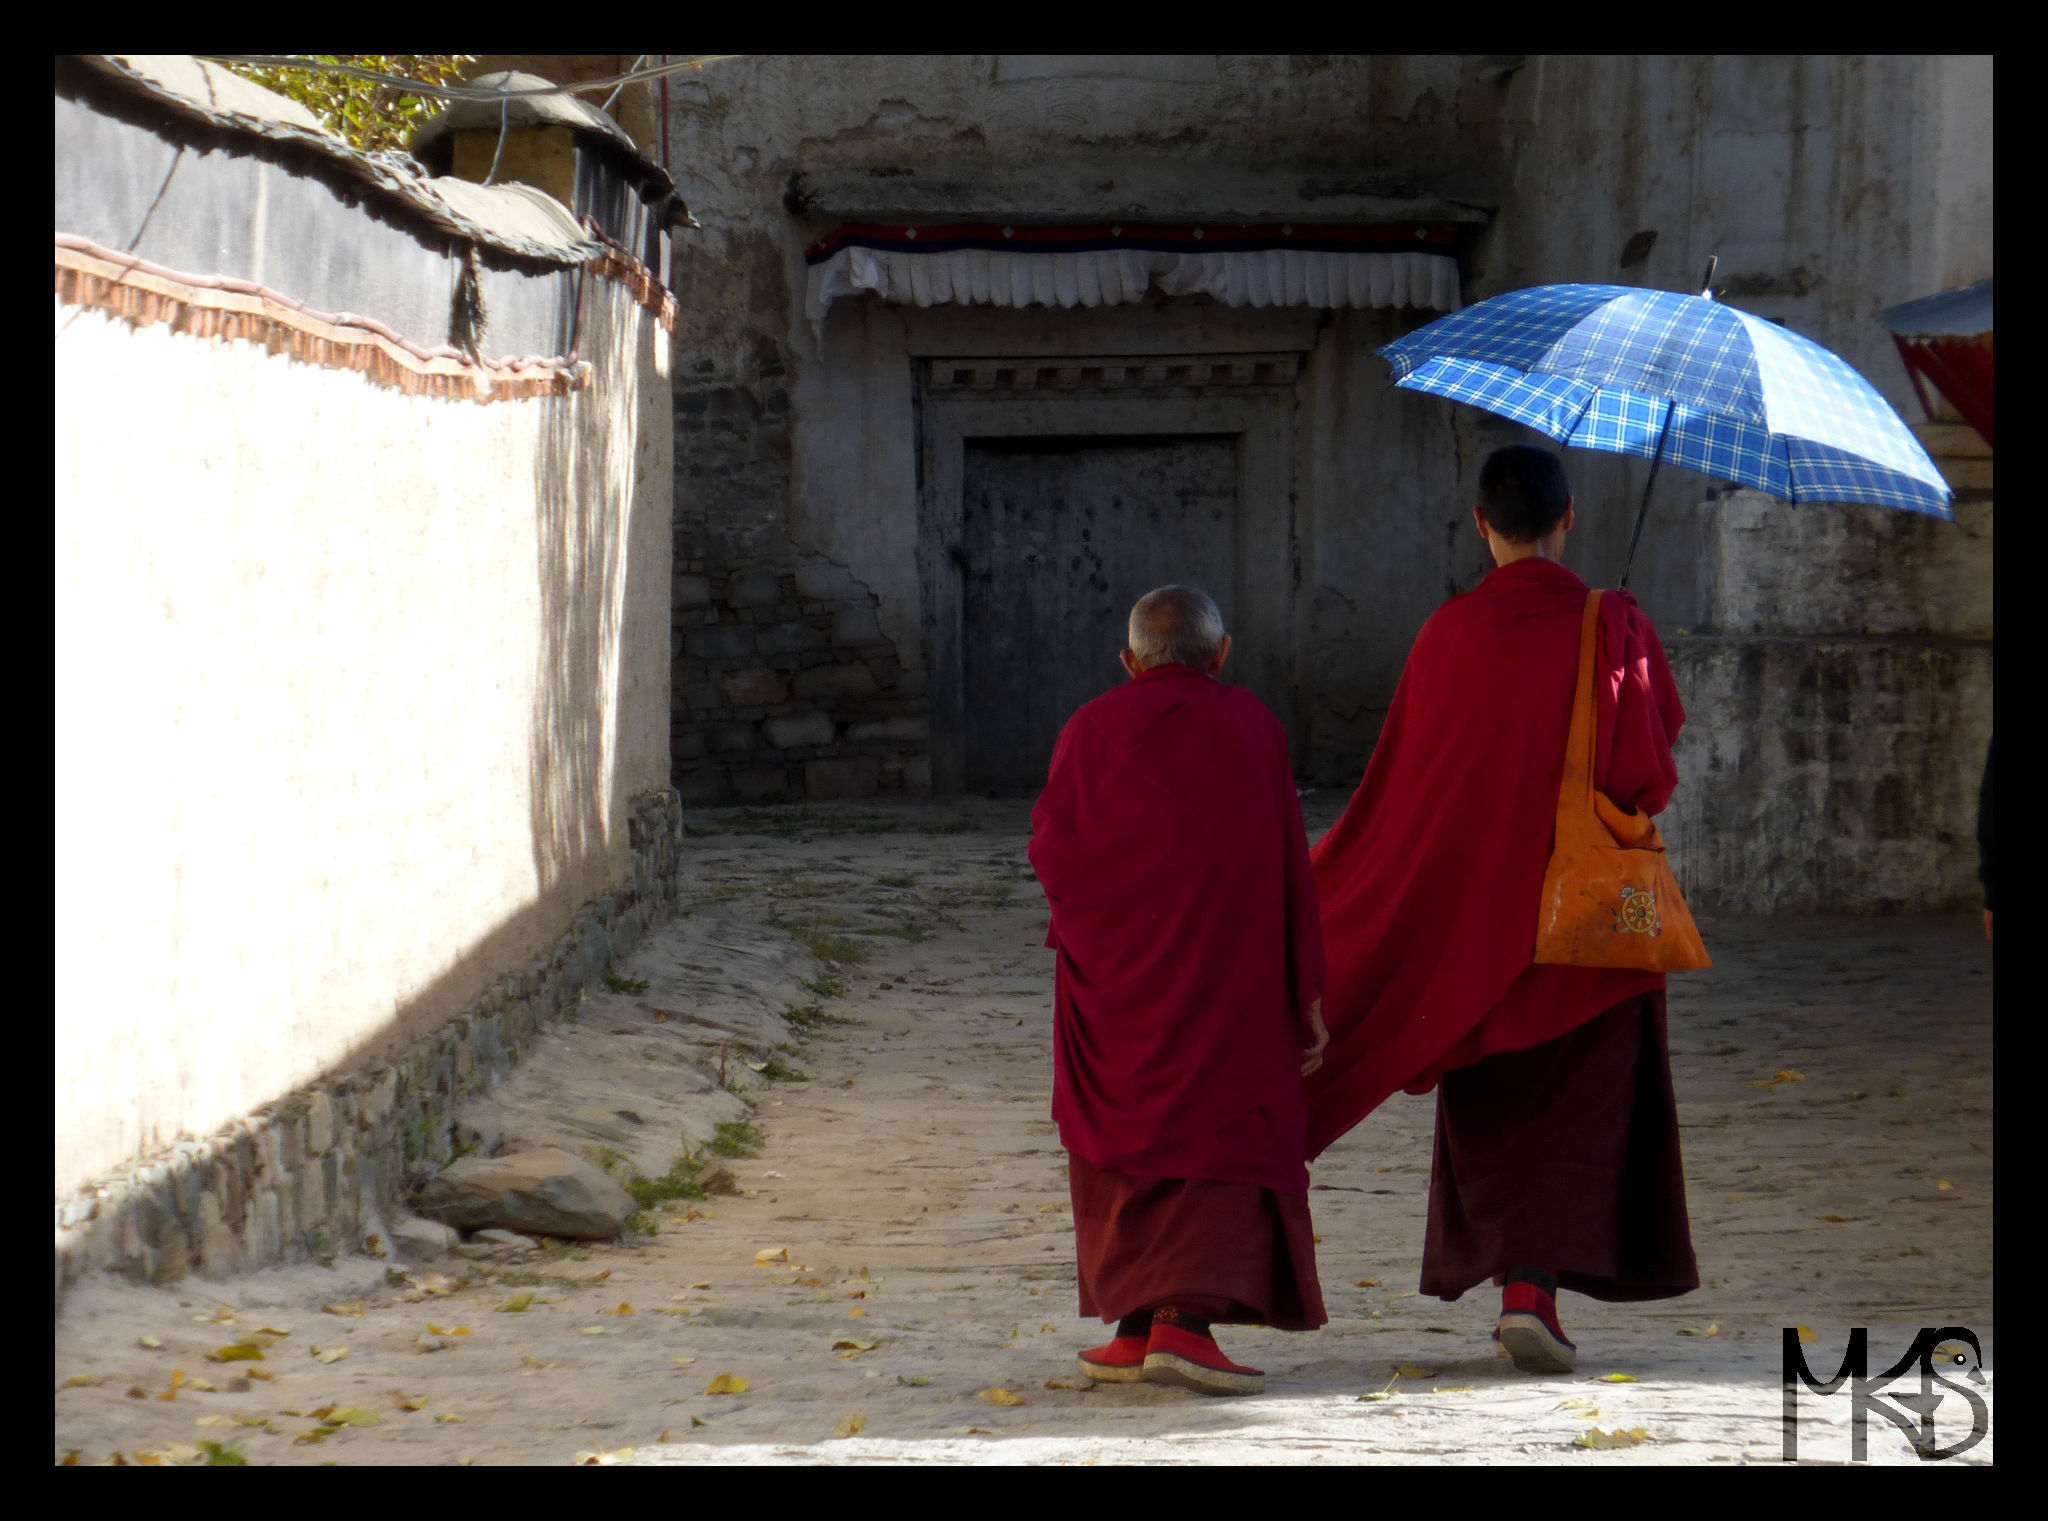 Monks in Tibet